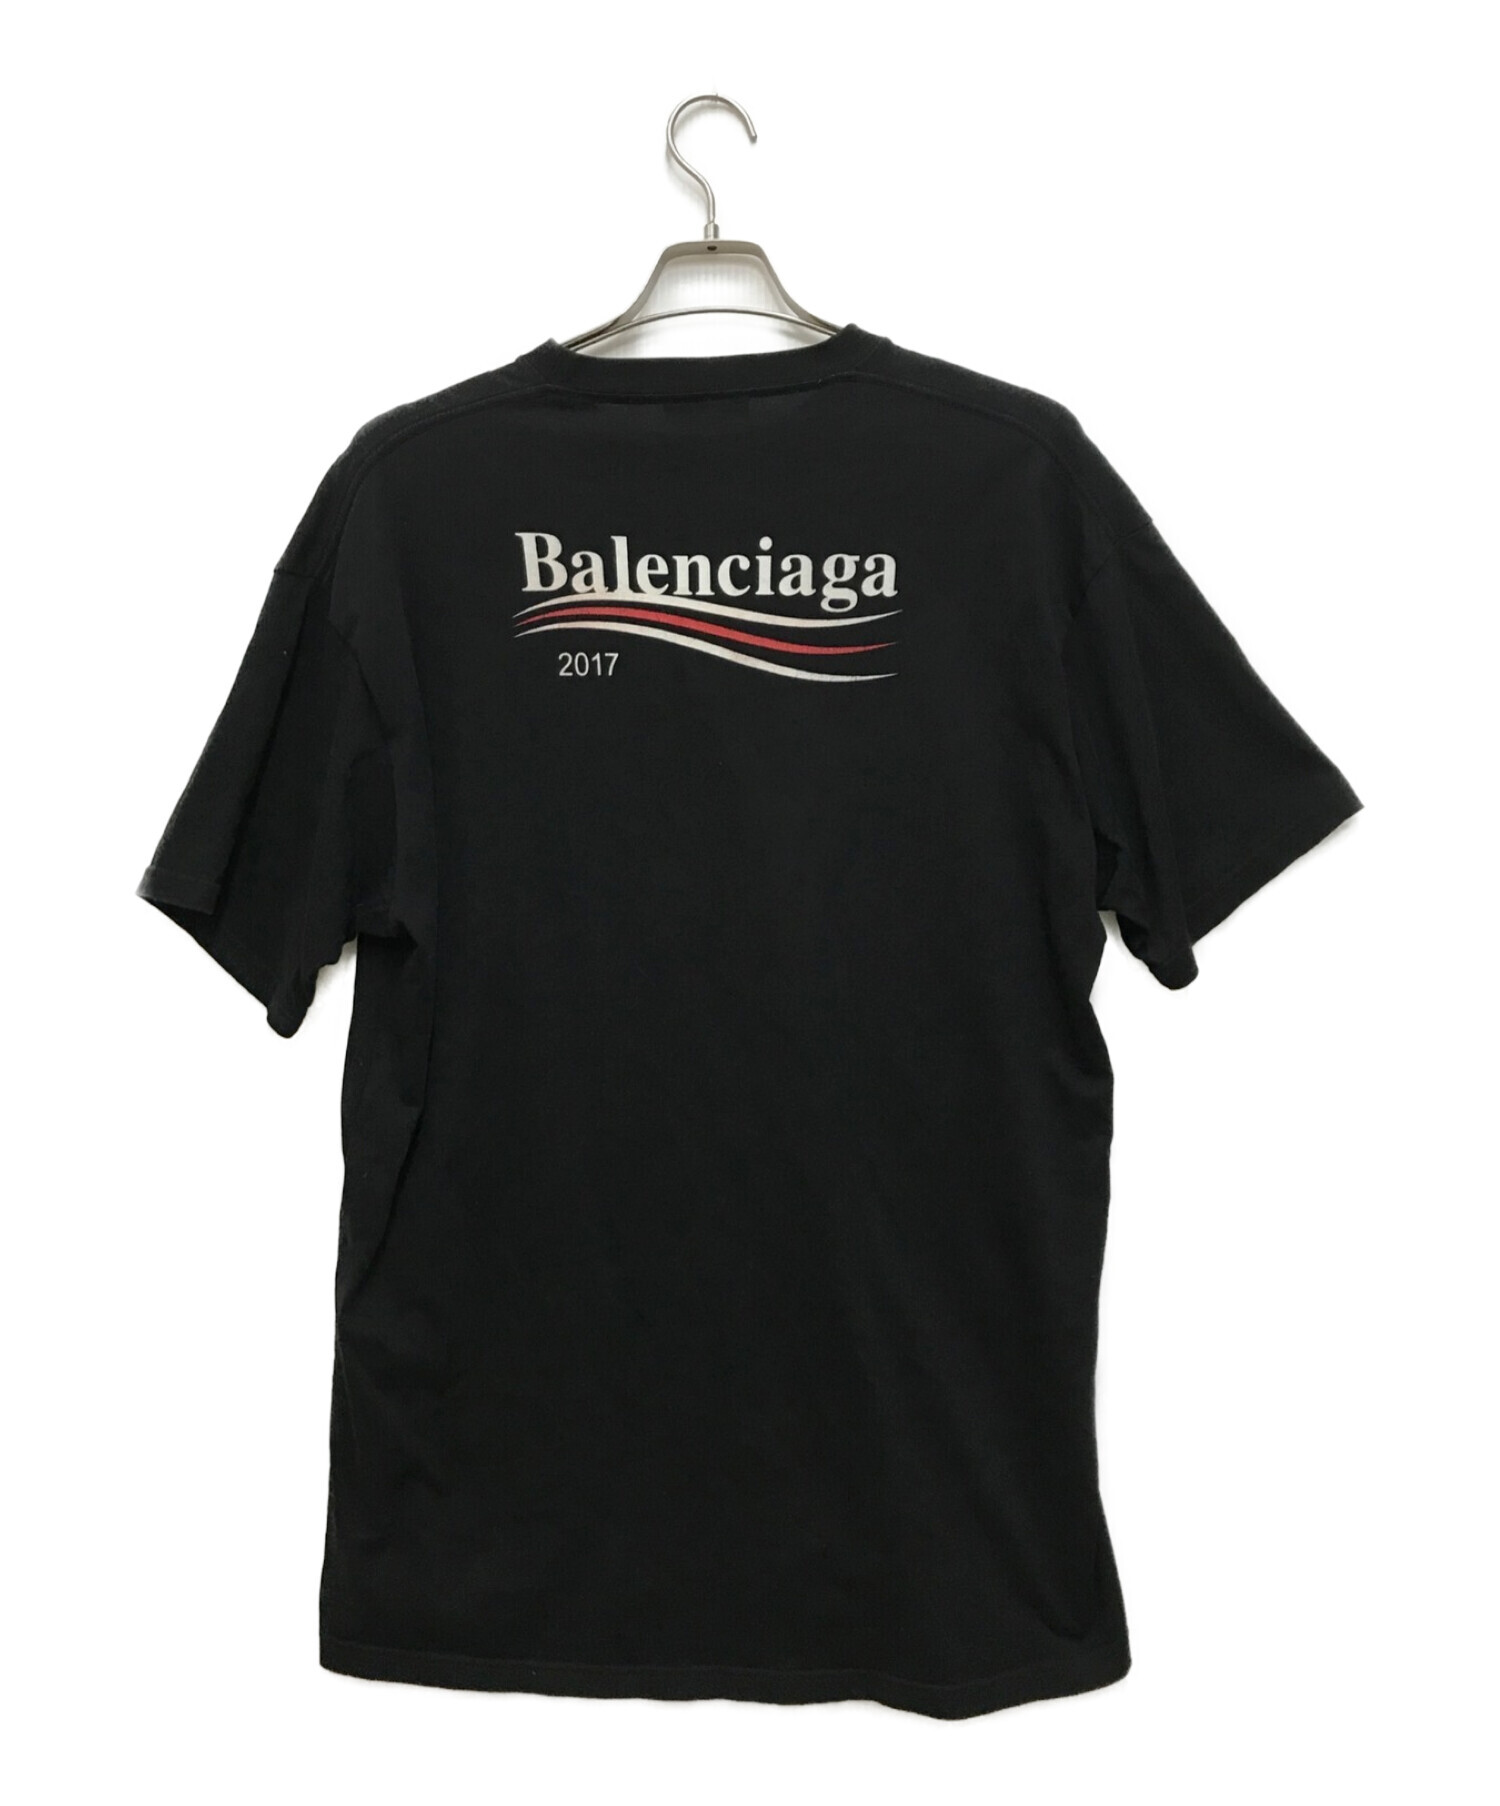 BALENCIAGA (バレンシアガ) キャンペーンロゴTシャツ ブラック サイズ:M